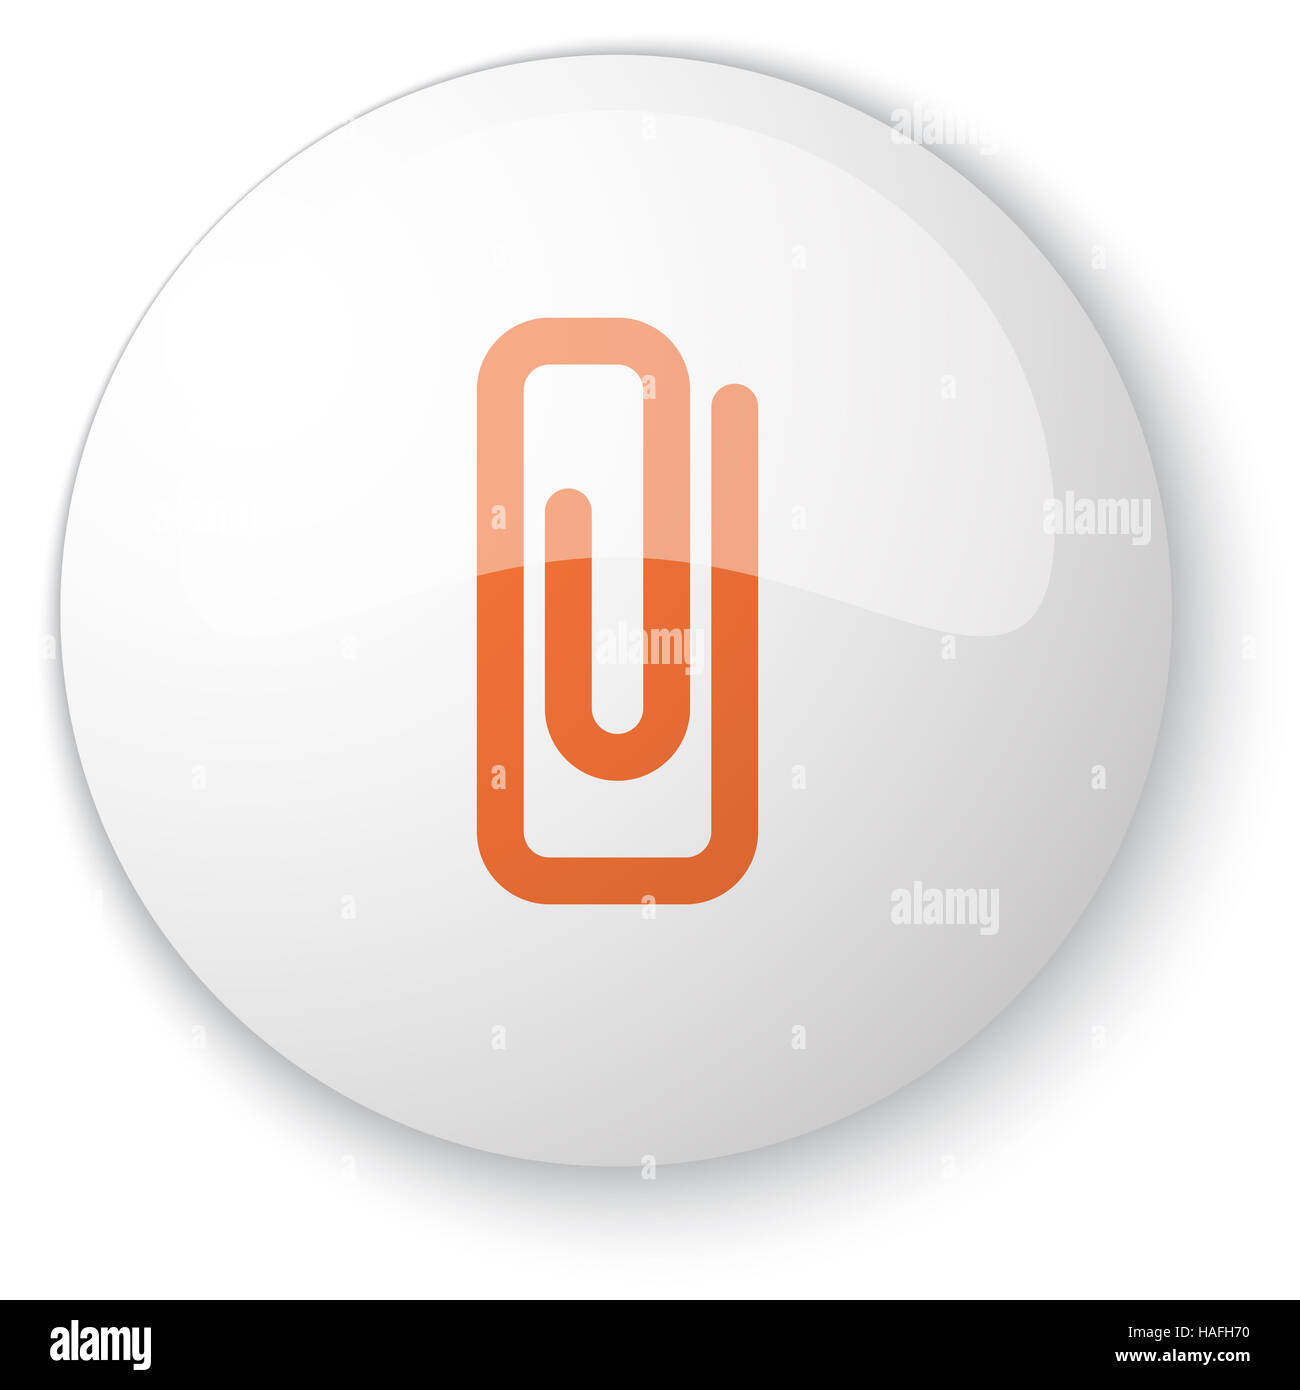 Blanc brillant avec bouton web trombone orange sur fond blanc Banque D'Images